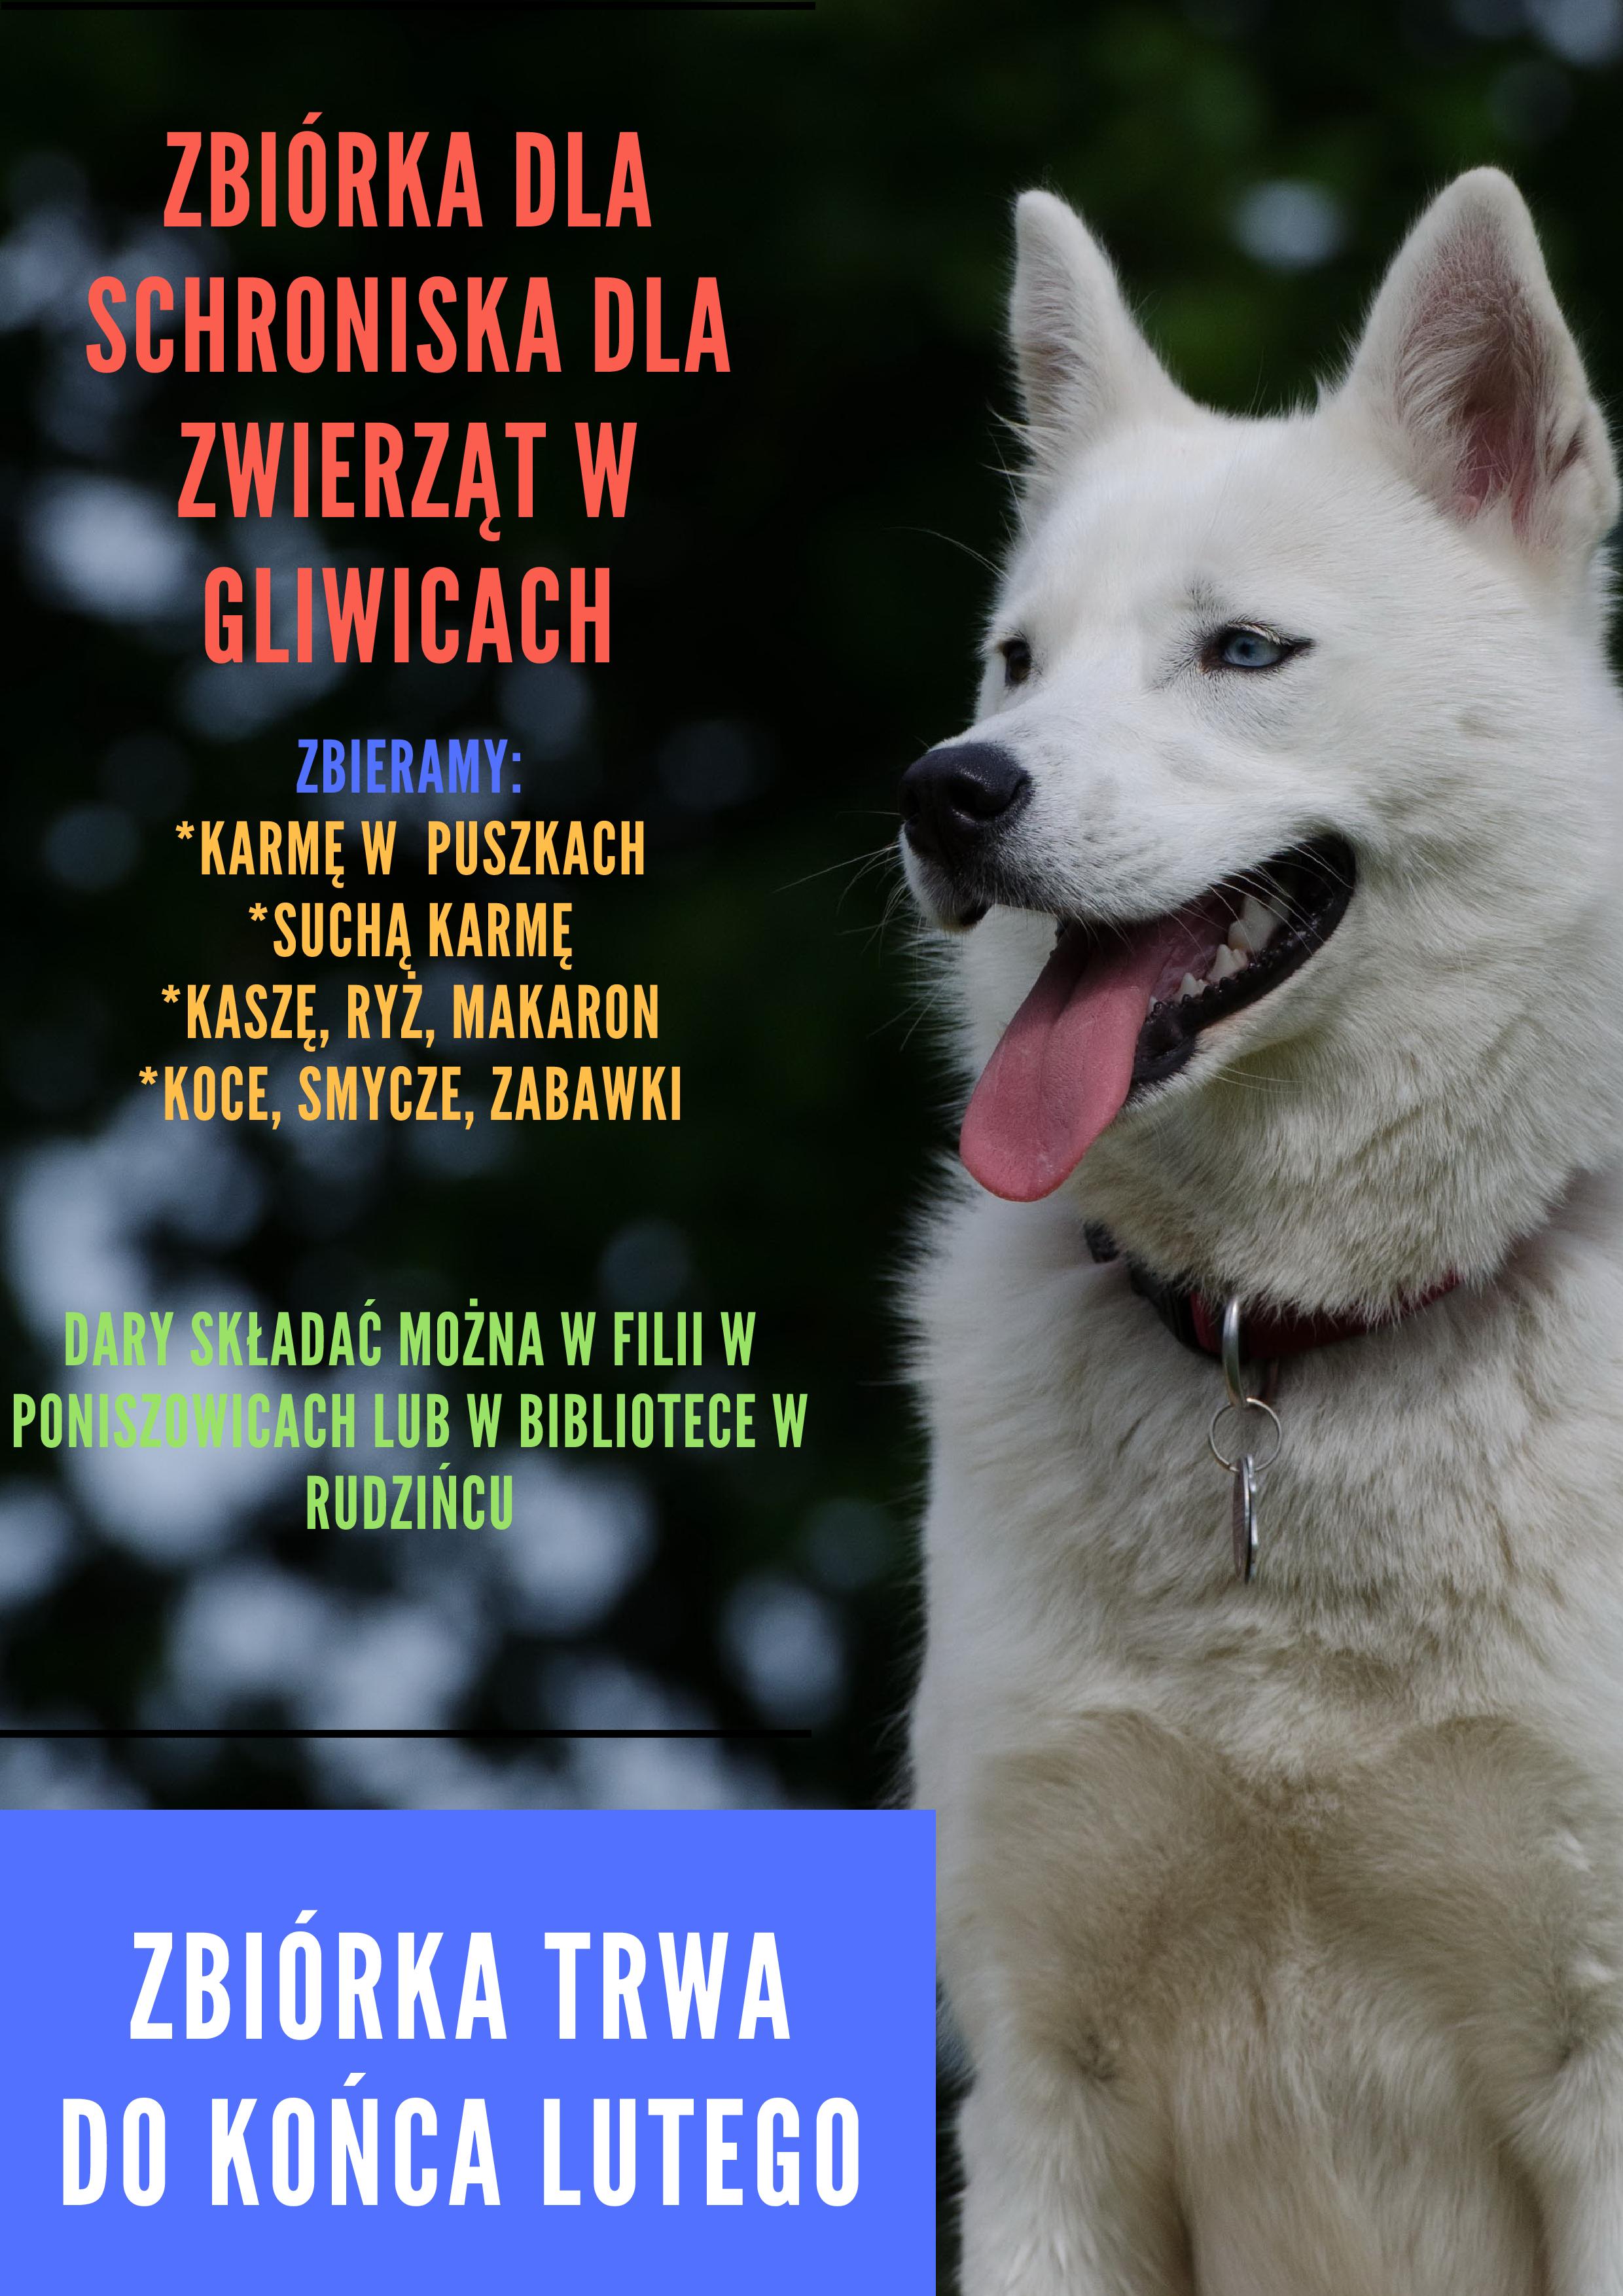 Plakat - zbiórka dla schroniska dla zwierząt w gliwicach